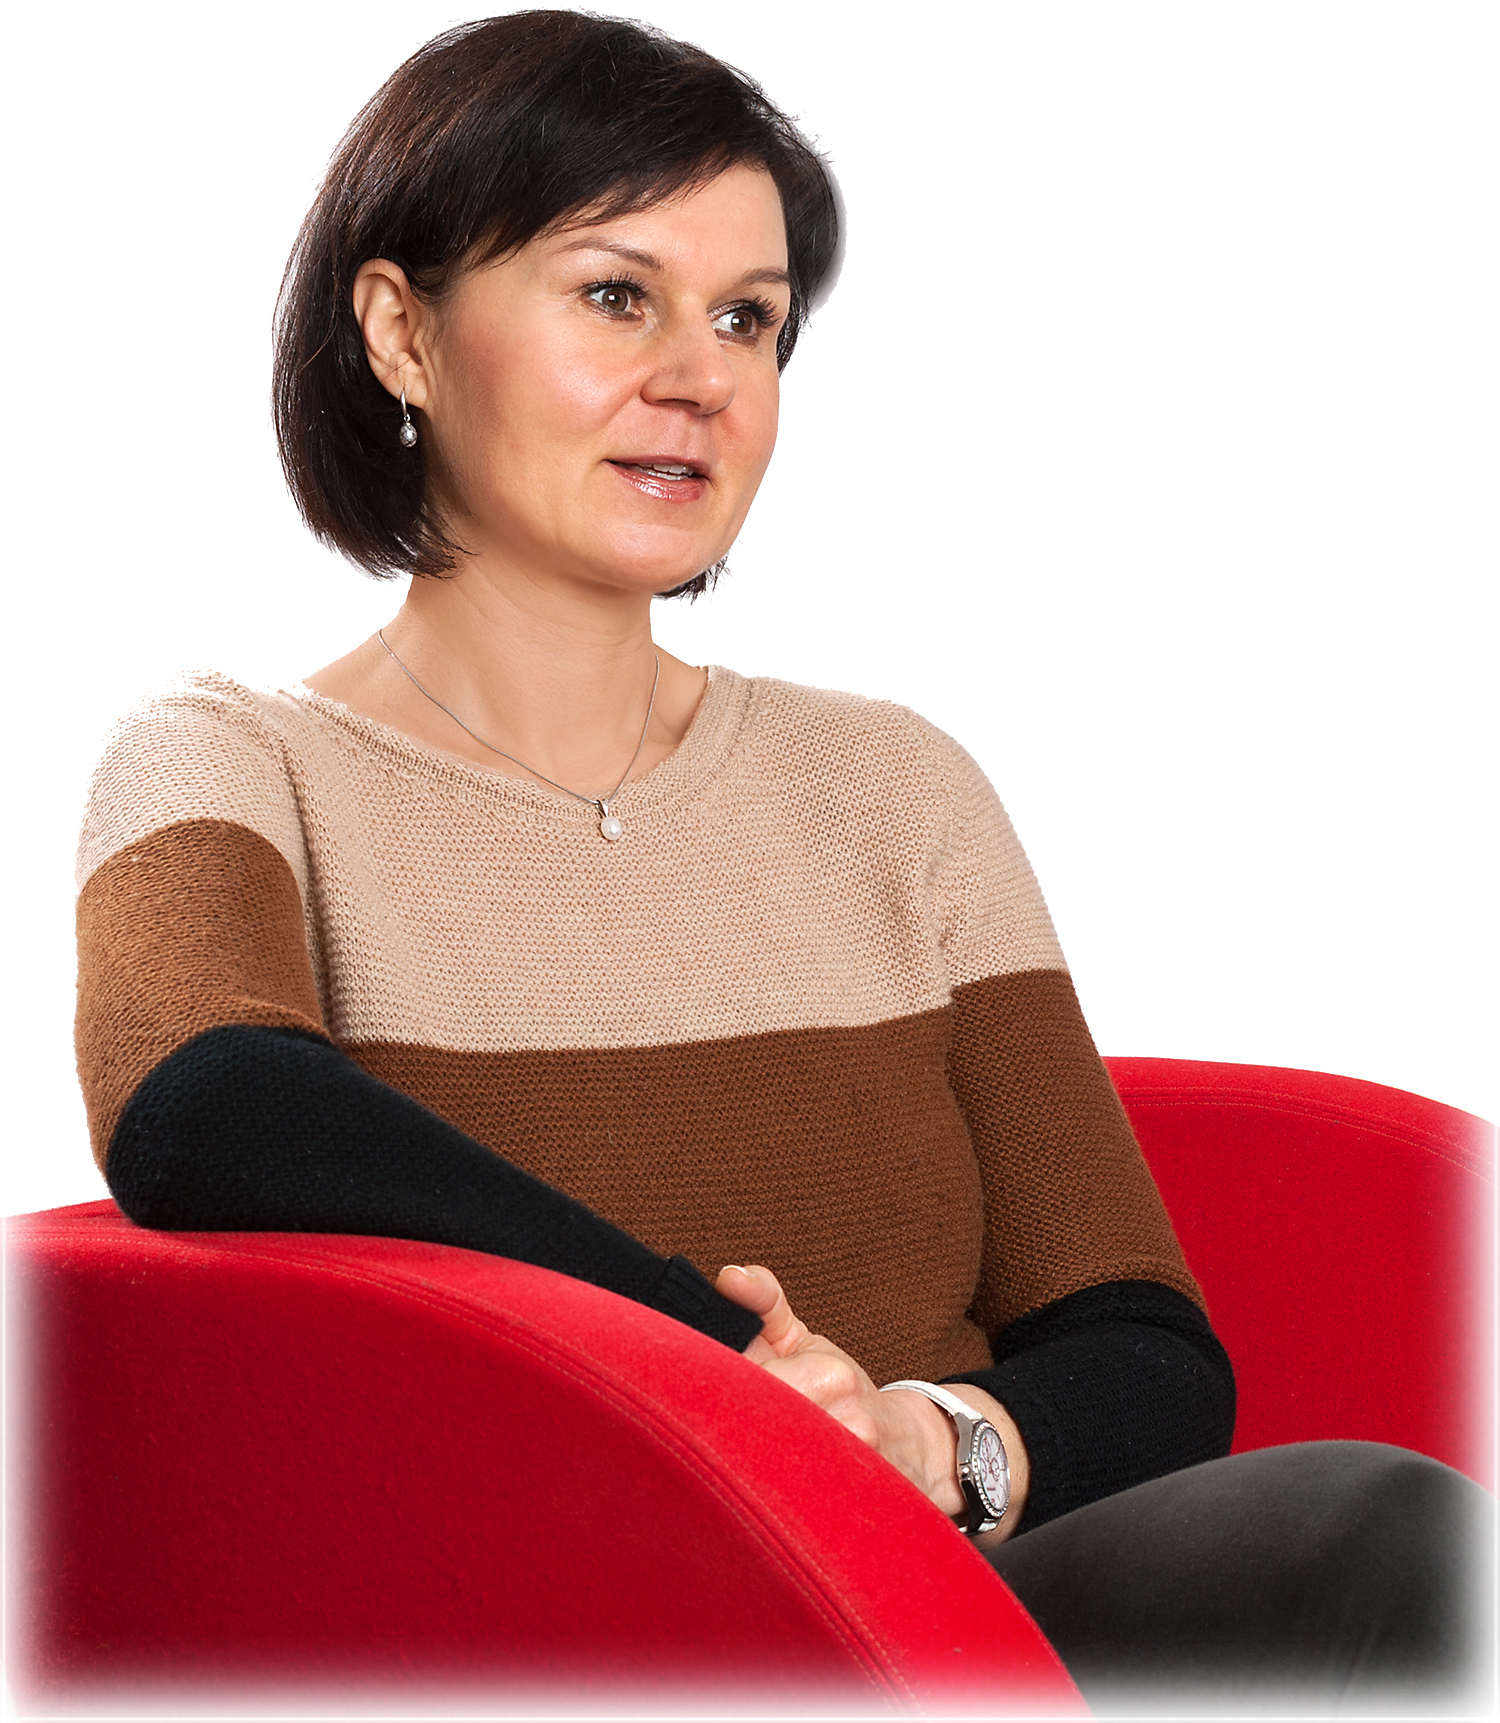 Psychotherapeutin in Psychotherapie Praxis in München: Diplom-Psychologin Barbara Diertl